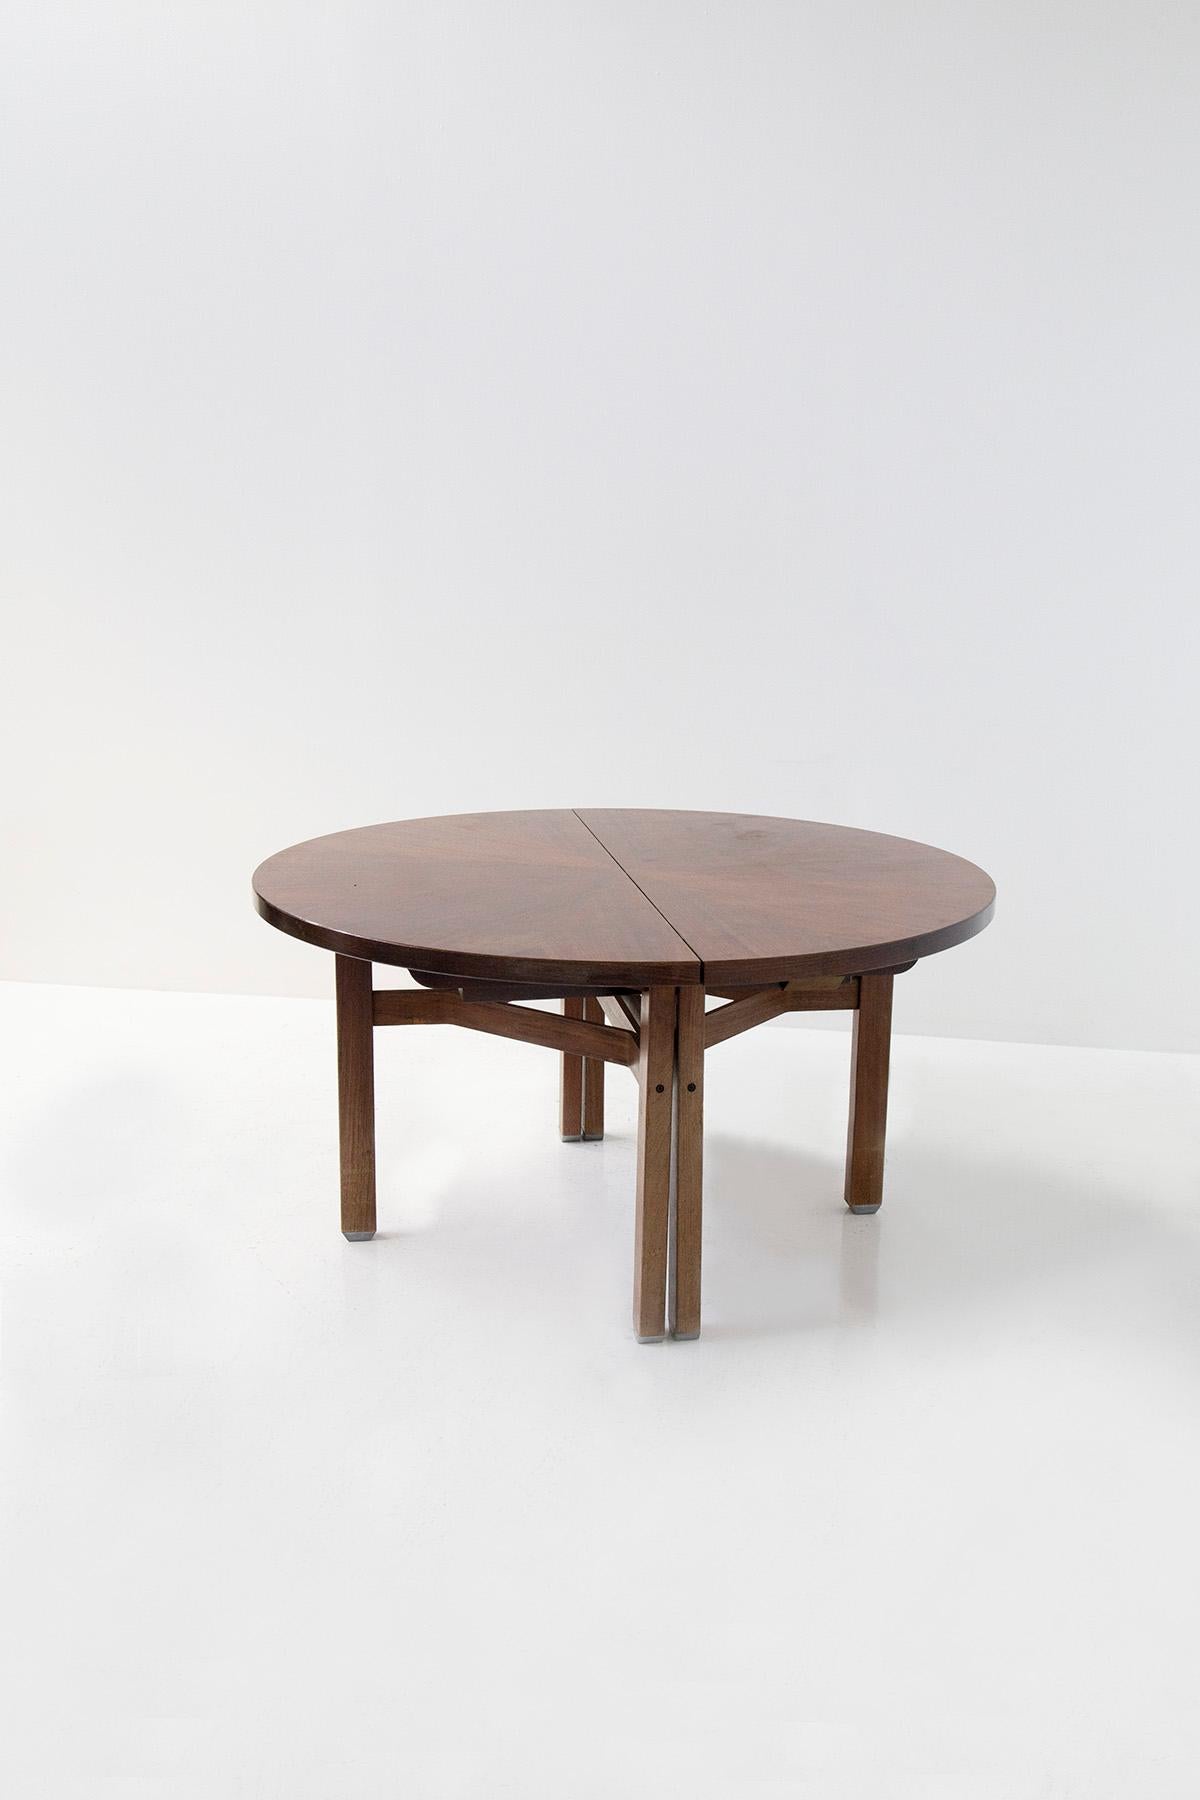 La table Olbia d'Ico Parisi, un chef-d'œuvre de design et d'artisanat, est un véritable témoignage de l'élégance et de l'innovation du mobilier italien du milieu du siècle dernier. Sa forme circulaire gracieuse, associée à l'utilisation du bois de